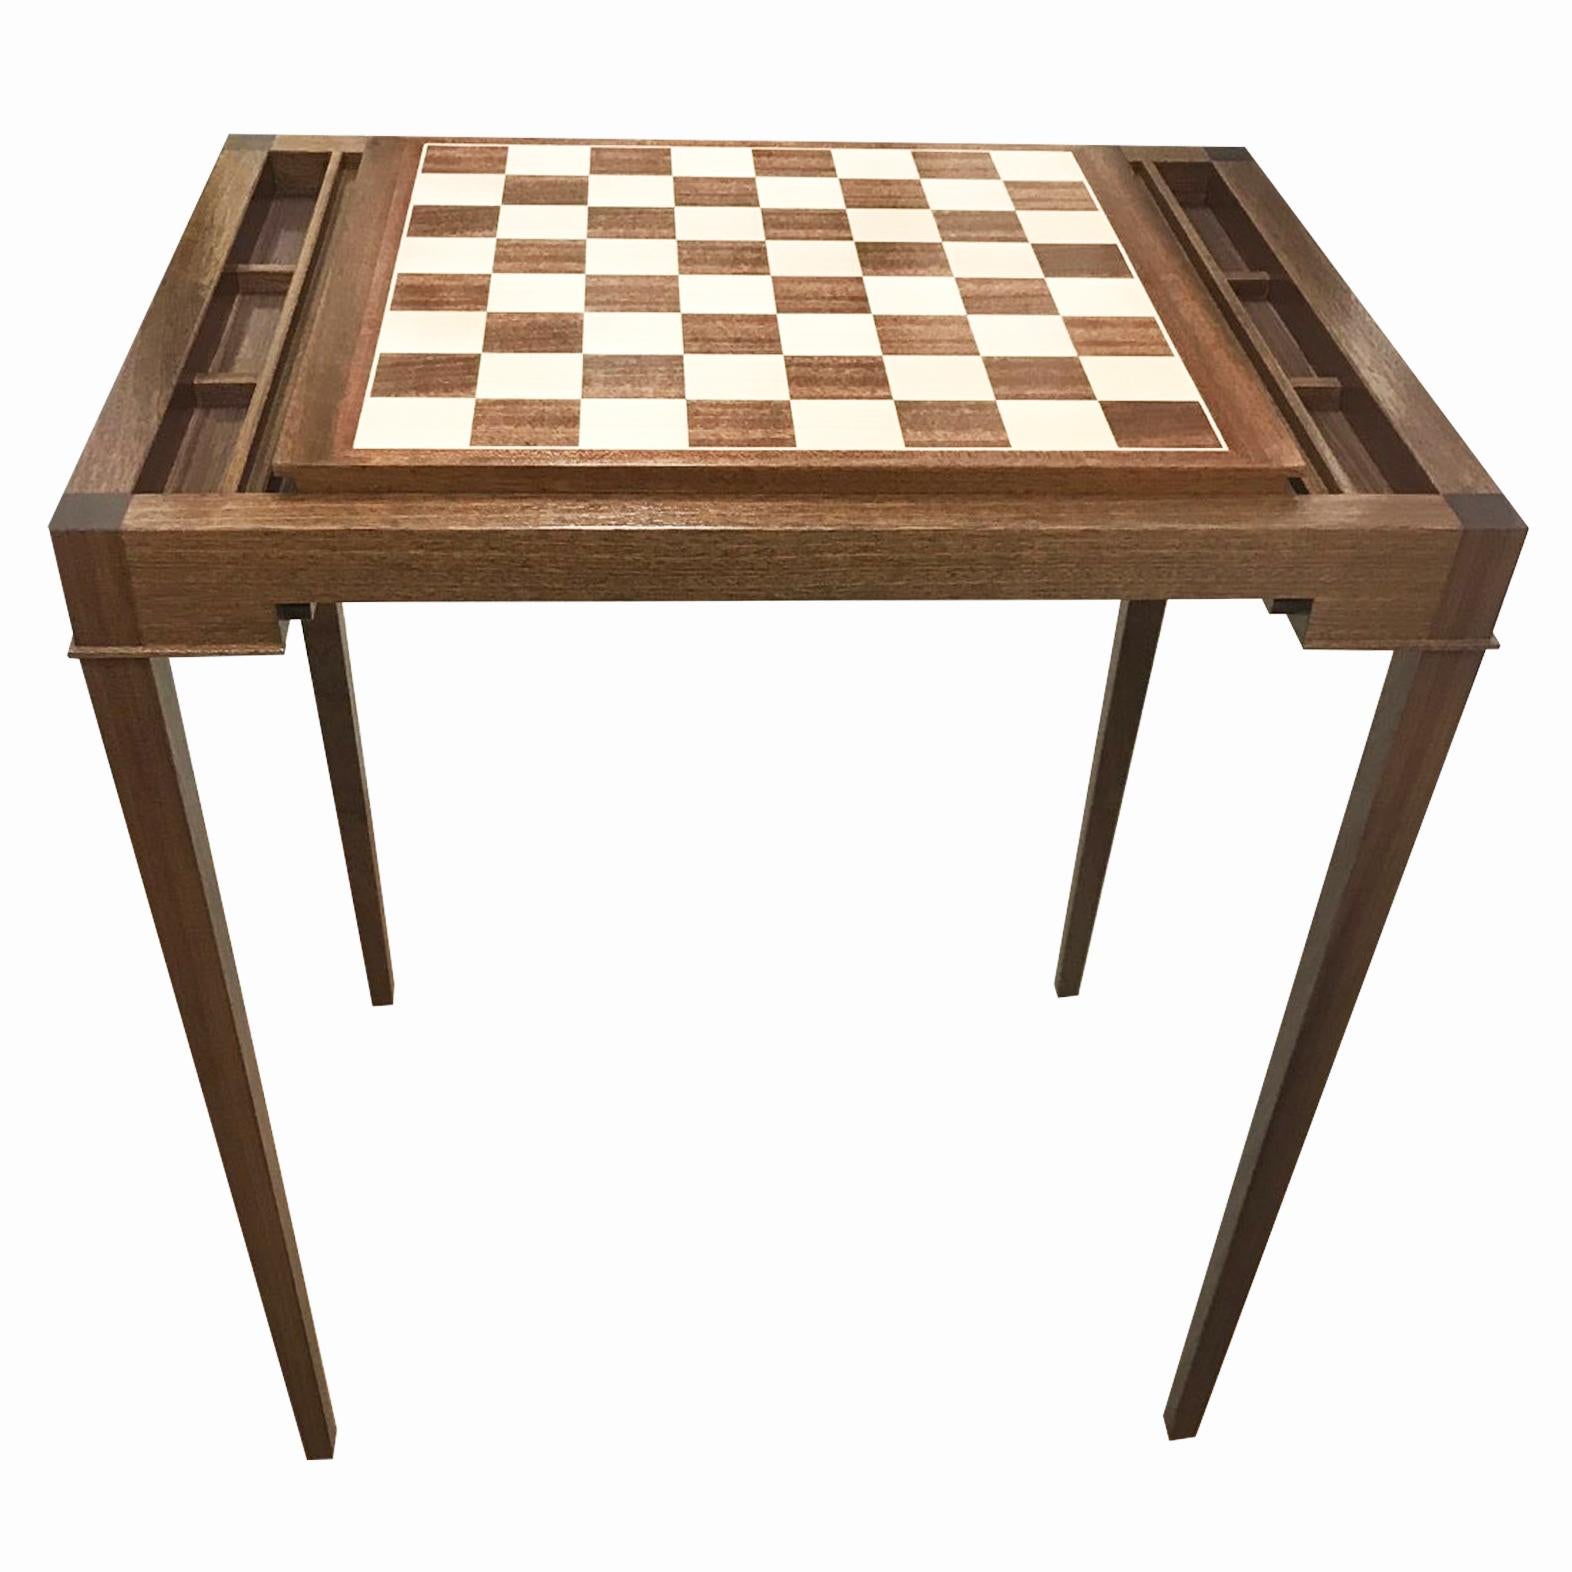 Vente pour une semaine seulement.  Table de backgammon en noyer sur mesure qui se transforme en jeu d'échecs grâce à un plateau coulissant. Peut être réalisé dans la taille et la couleur de votre choix.

Nouvelle production. Fabriqué sur commande en